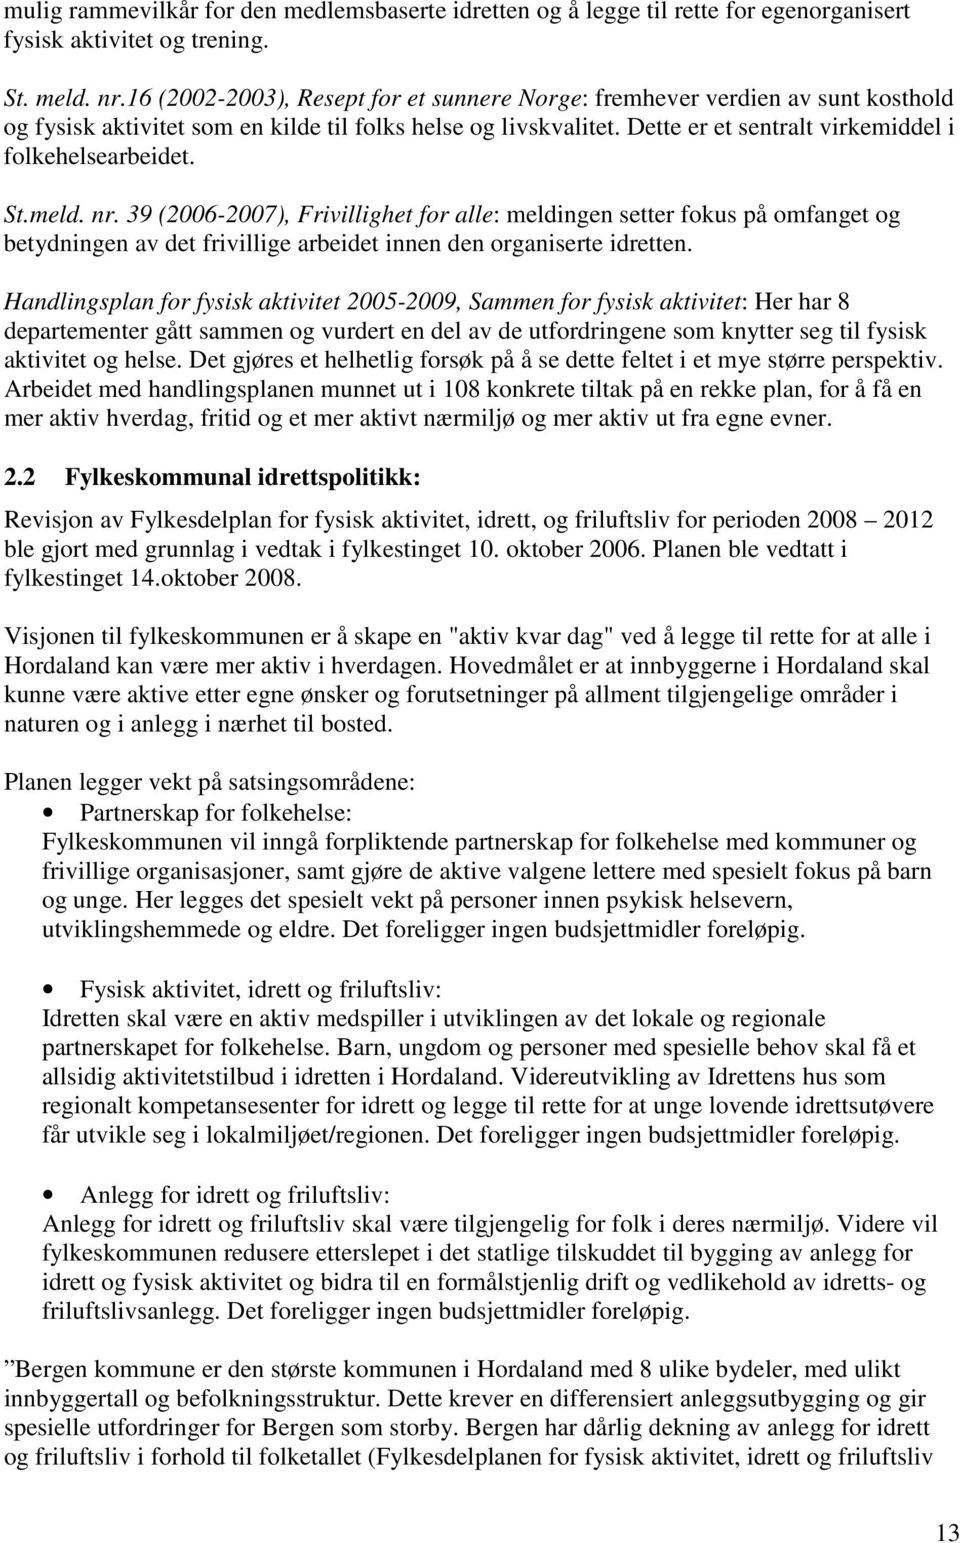 St.meld. nr. 39 (2006-2007), Frivillighet for alle: meldingen setter fokus på omfanget og betydningen av det frivillige arbeidet innen den organiserte idretten.